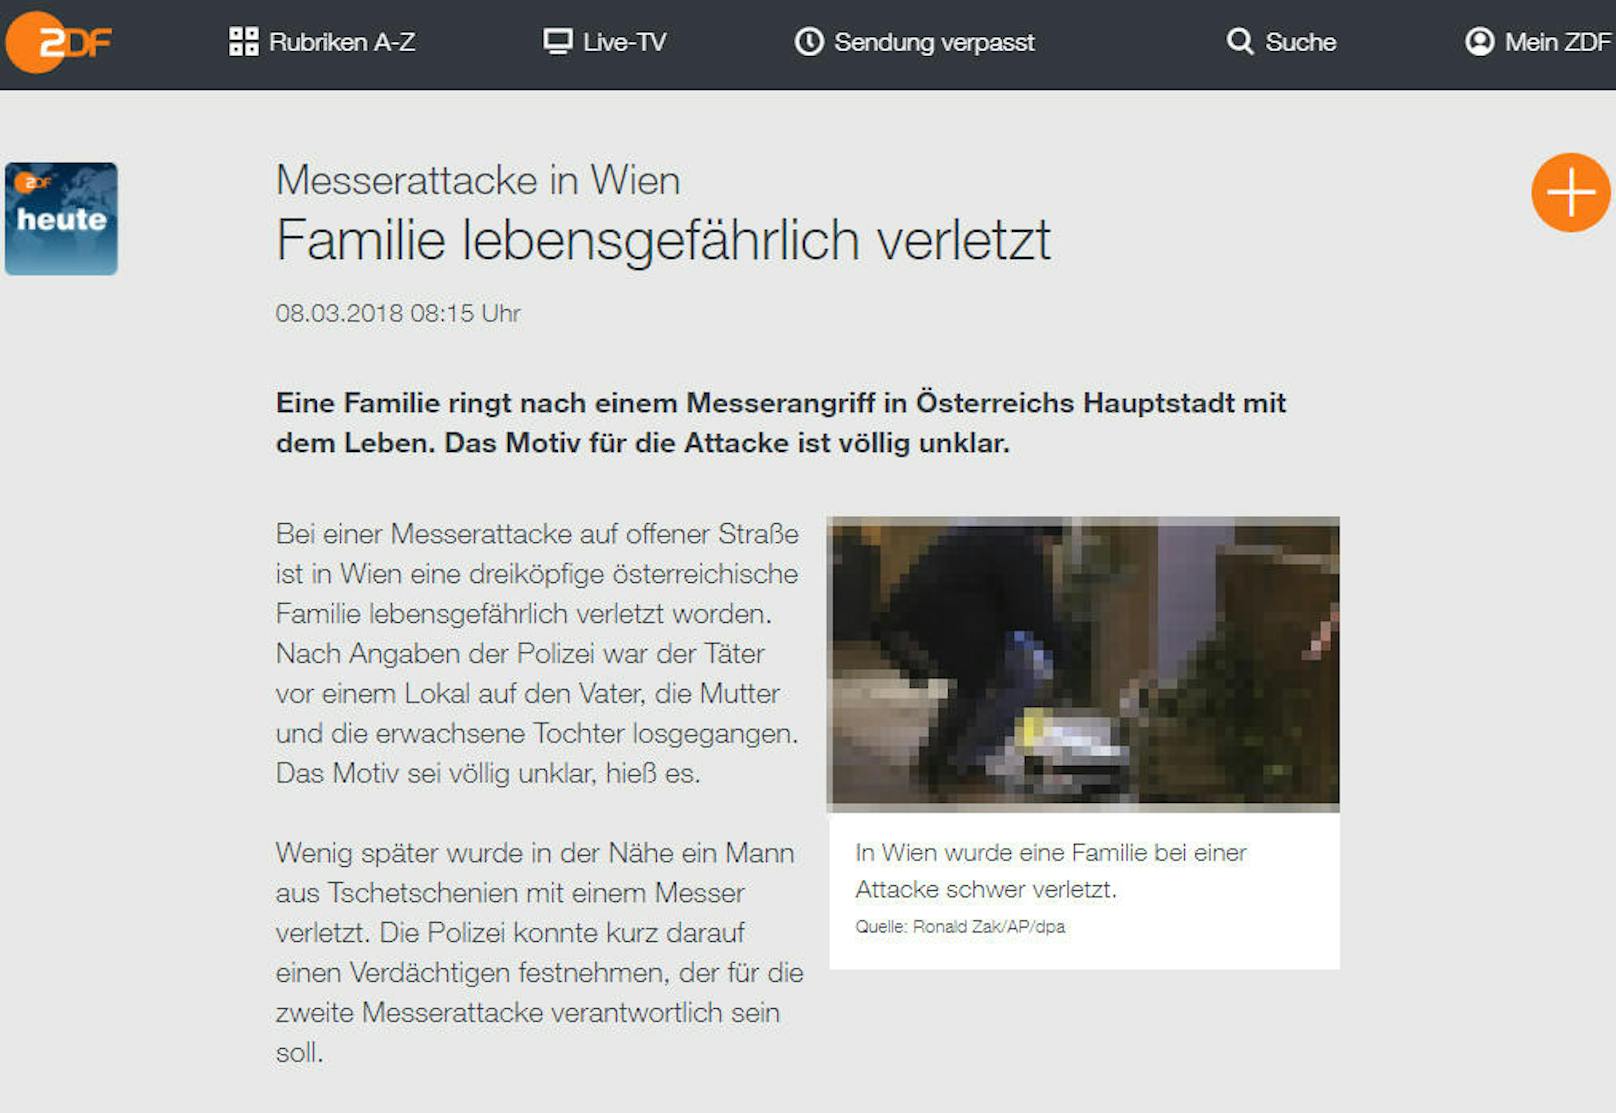 <b>Deutschland, ZDF:</b> "Messerattacke in Wien. Familie lebensgefährlich verletzt"